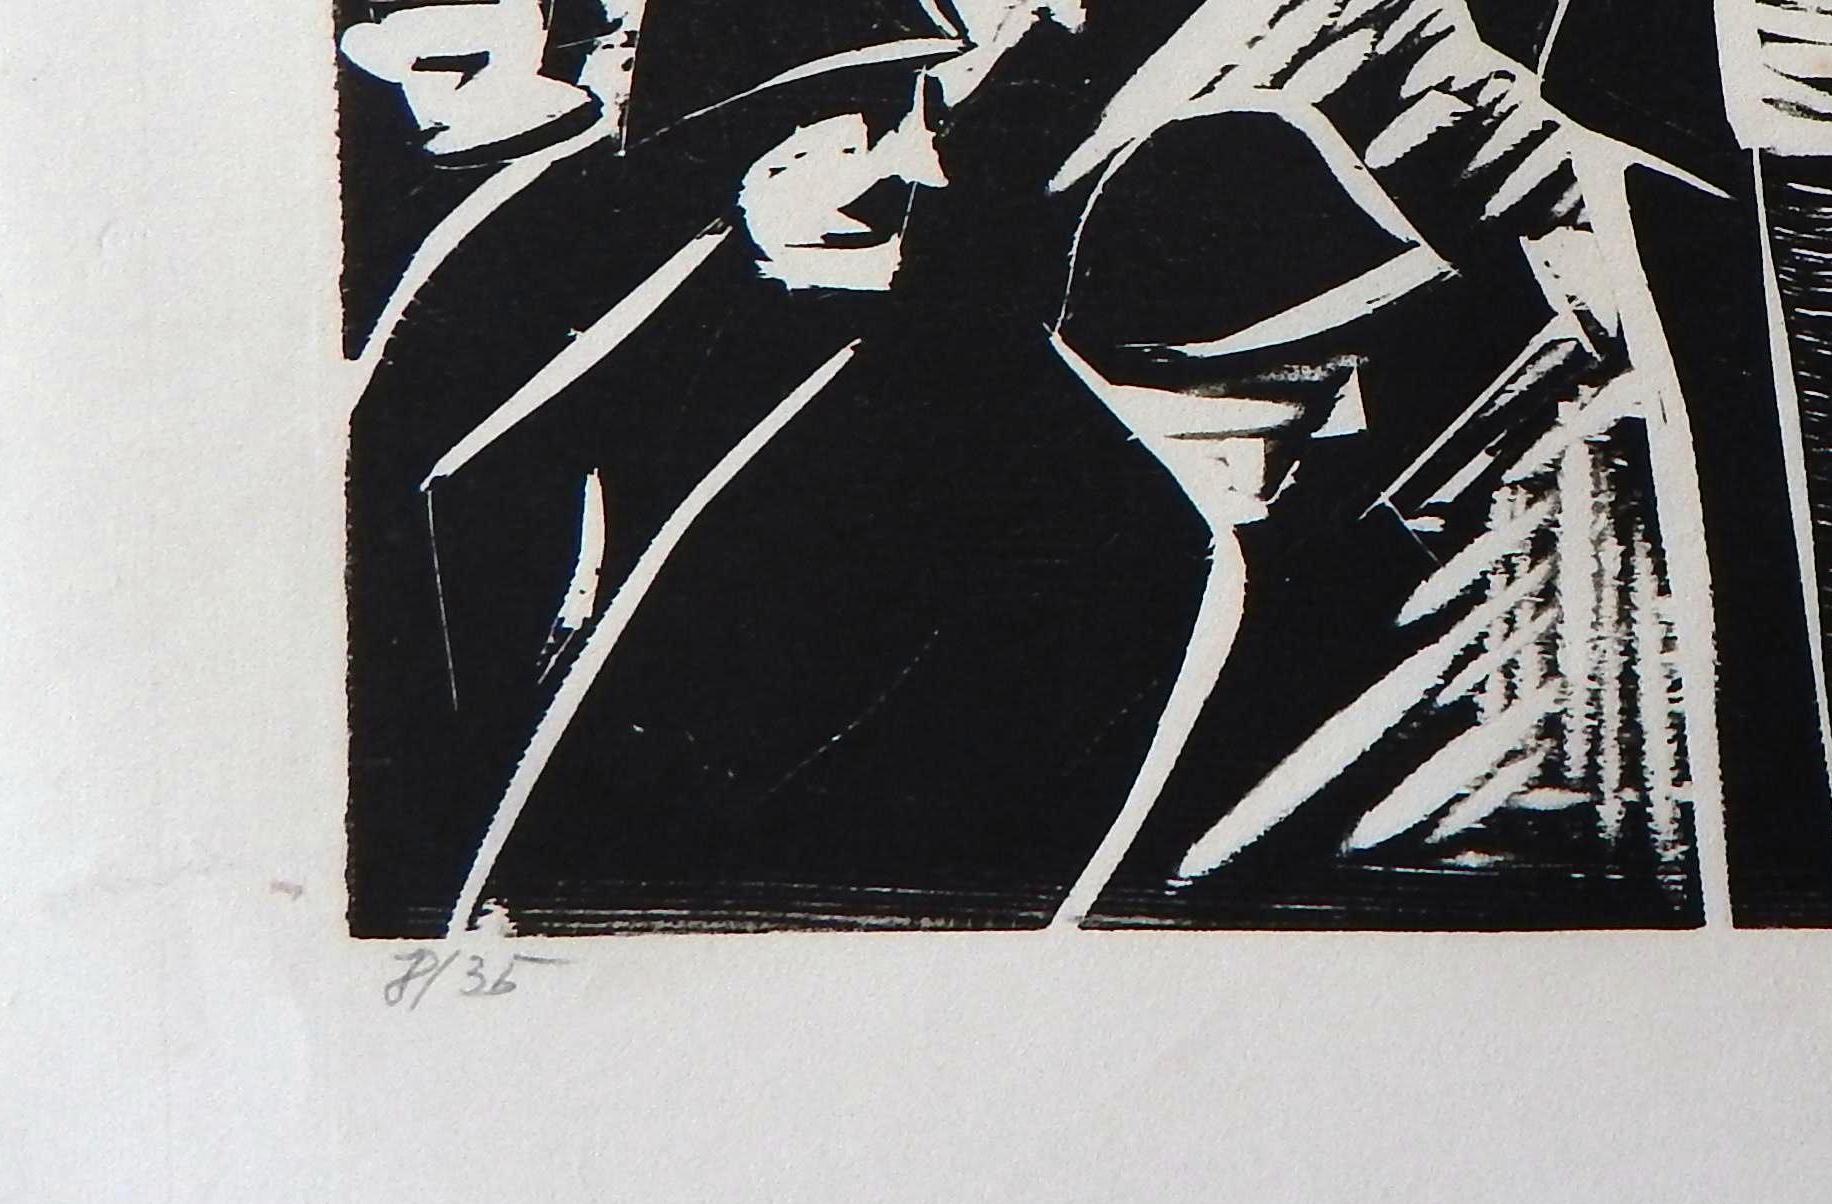 Papier Herman Volz, gravure sur bois originale de Herman Volz, troubles sociaux des années 1960, émeutiers en vente